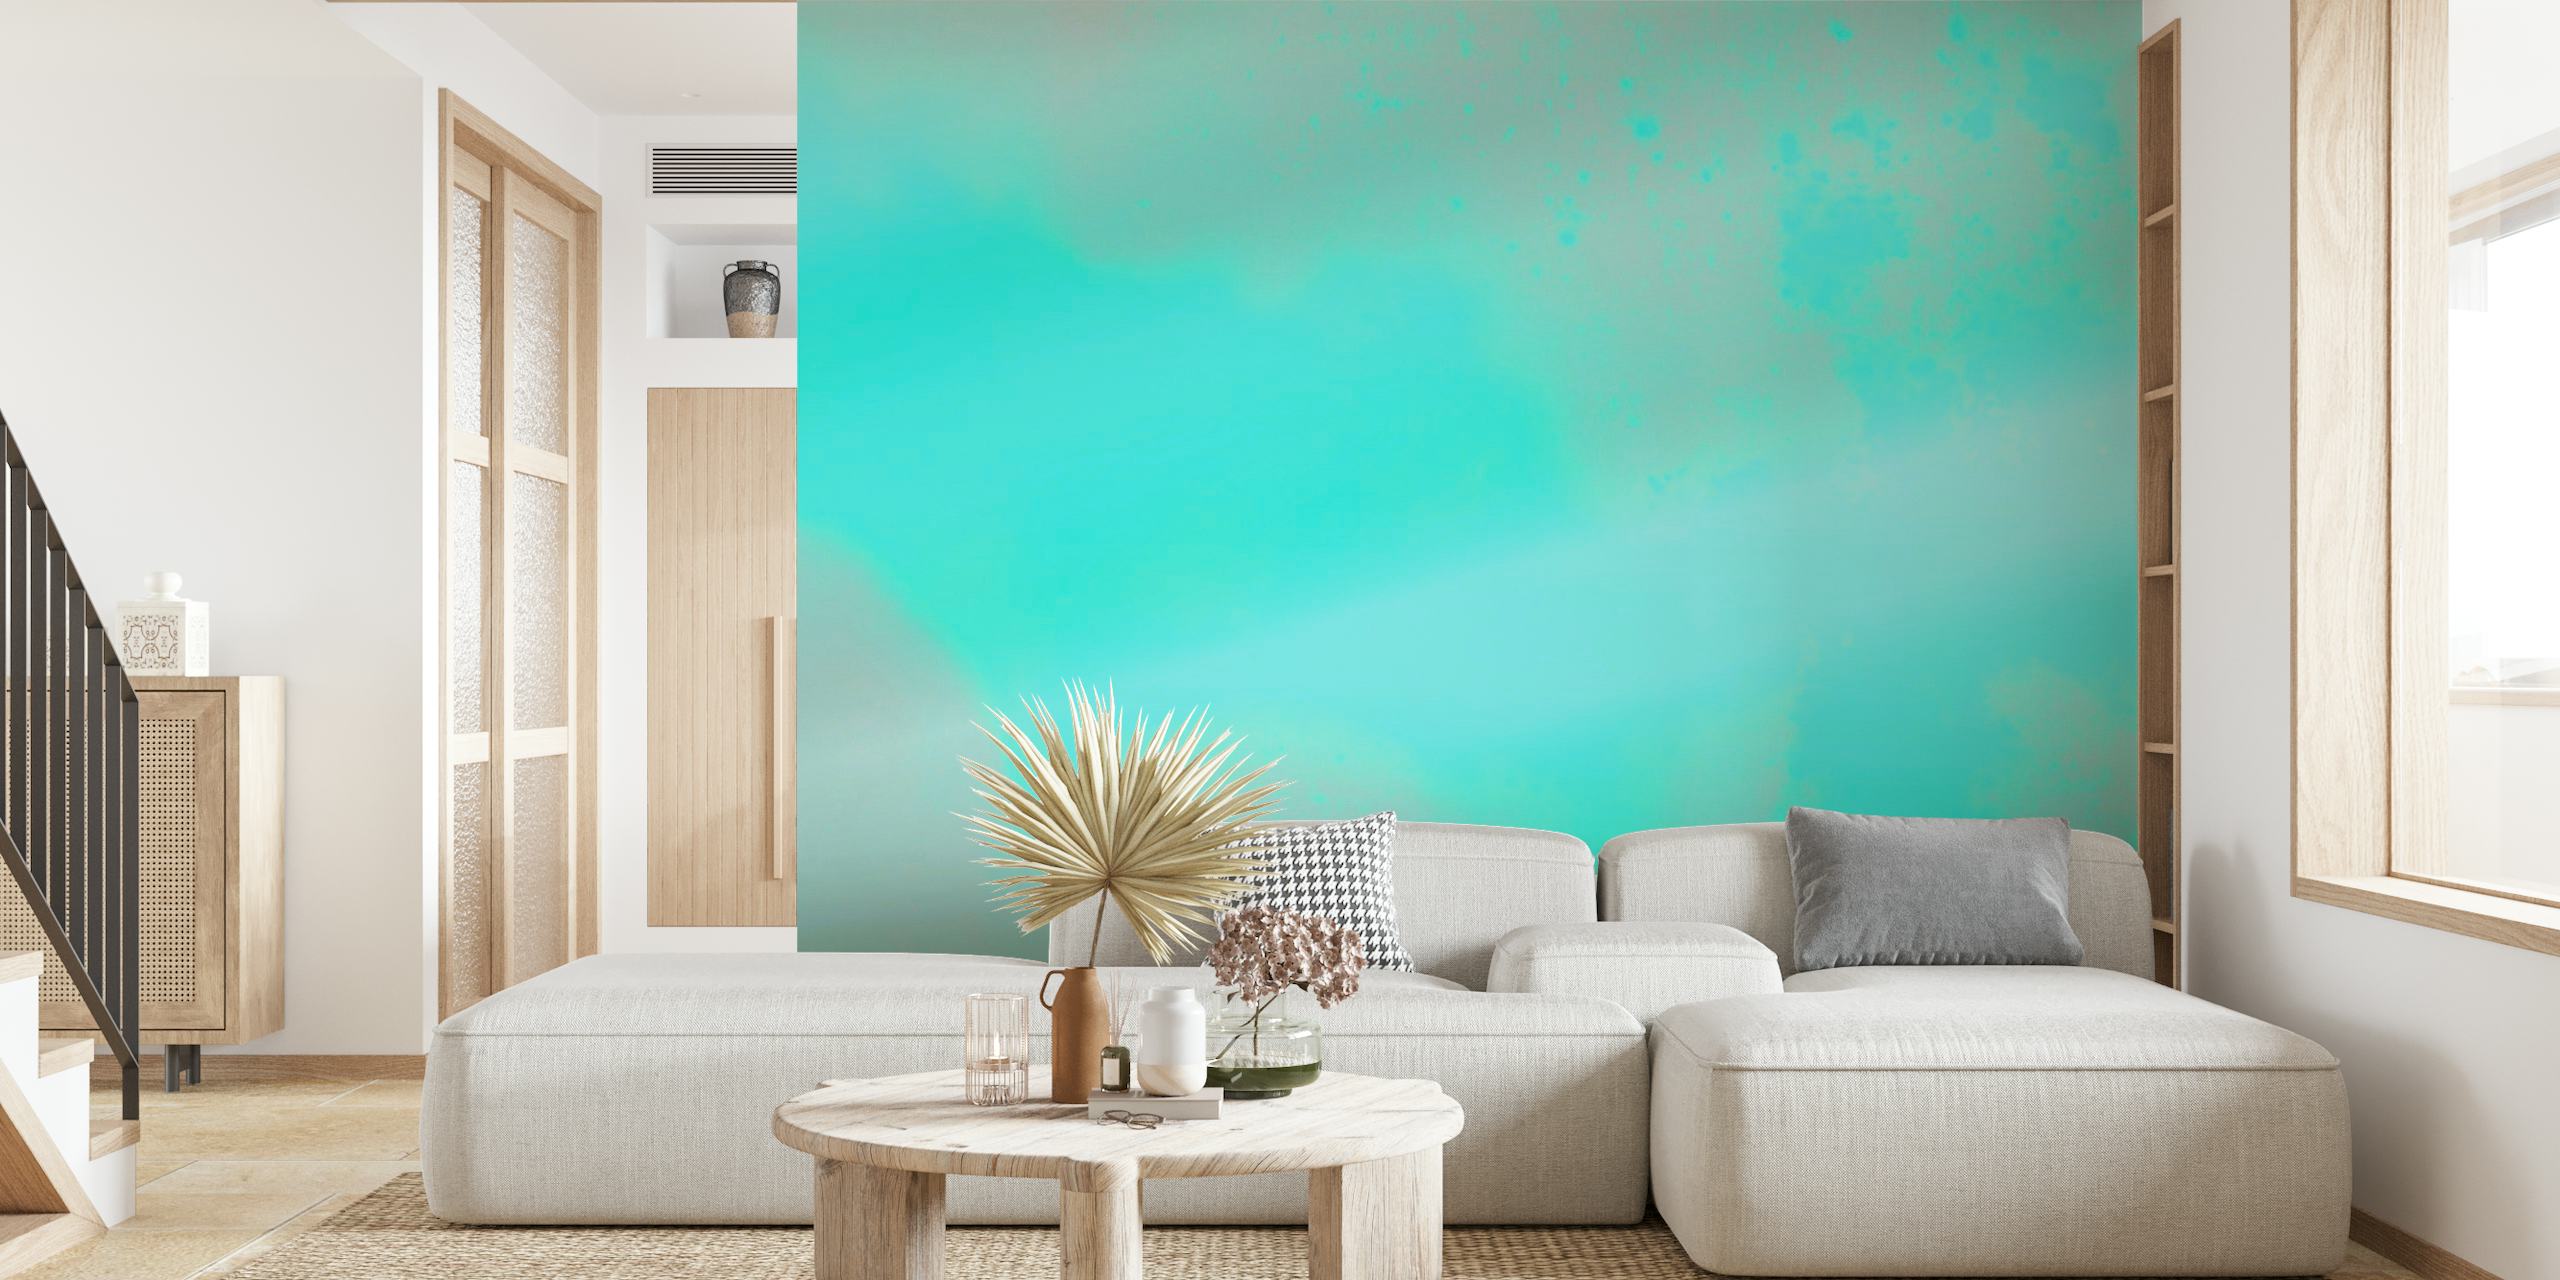 Zidna slika apstraktne tirkizne i zelene boje u prahu